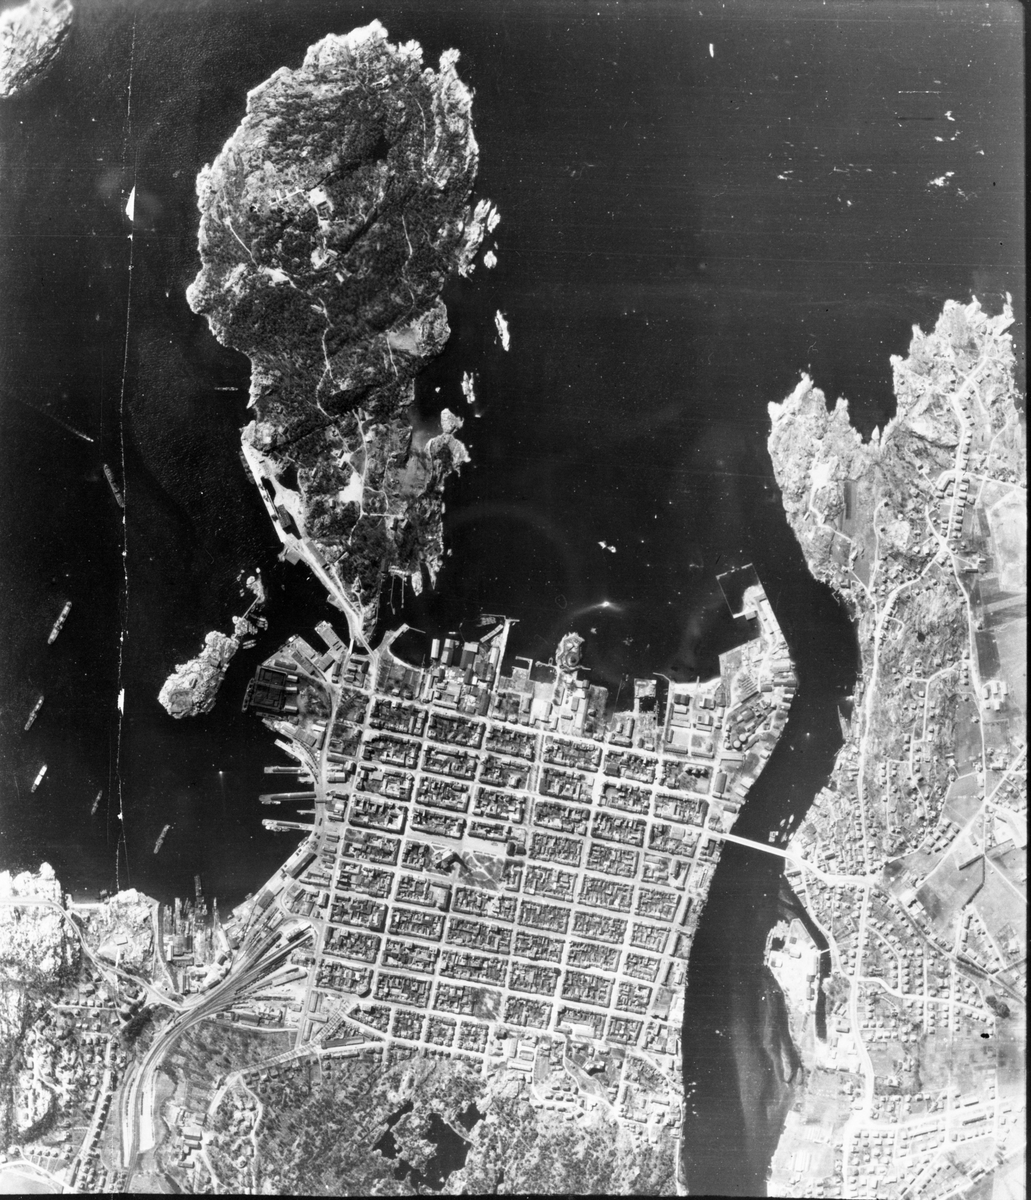 Motiv: Odderøya fort. Luftfoto 2. mai 1942.